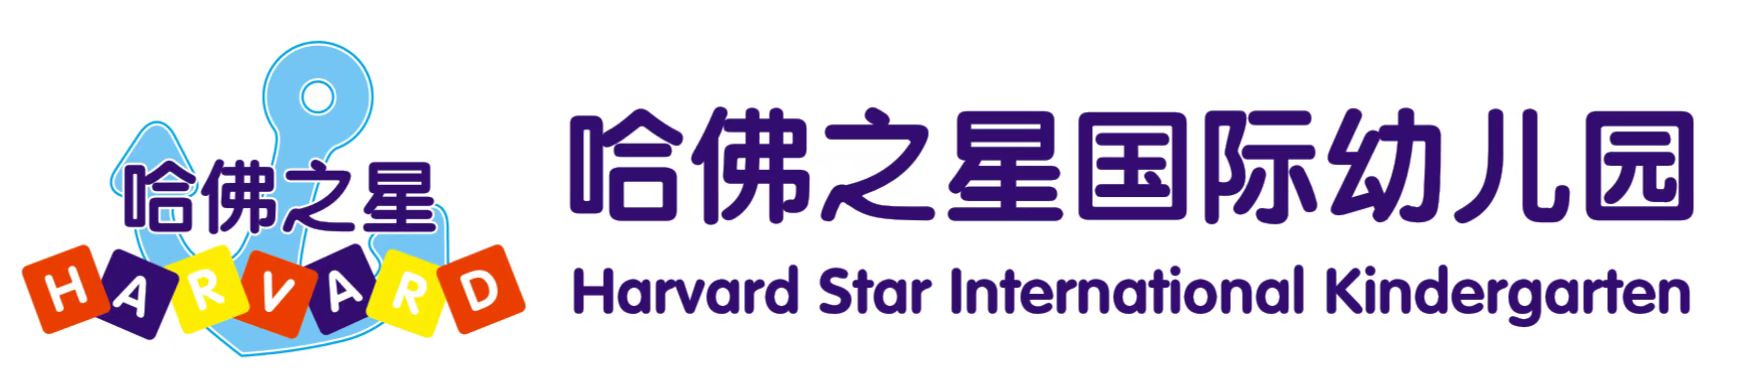 仙桃市沙嘴办事处哈佛之星幼儿园logo图片